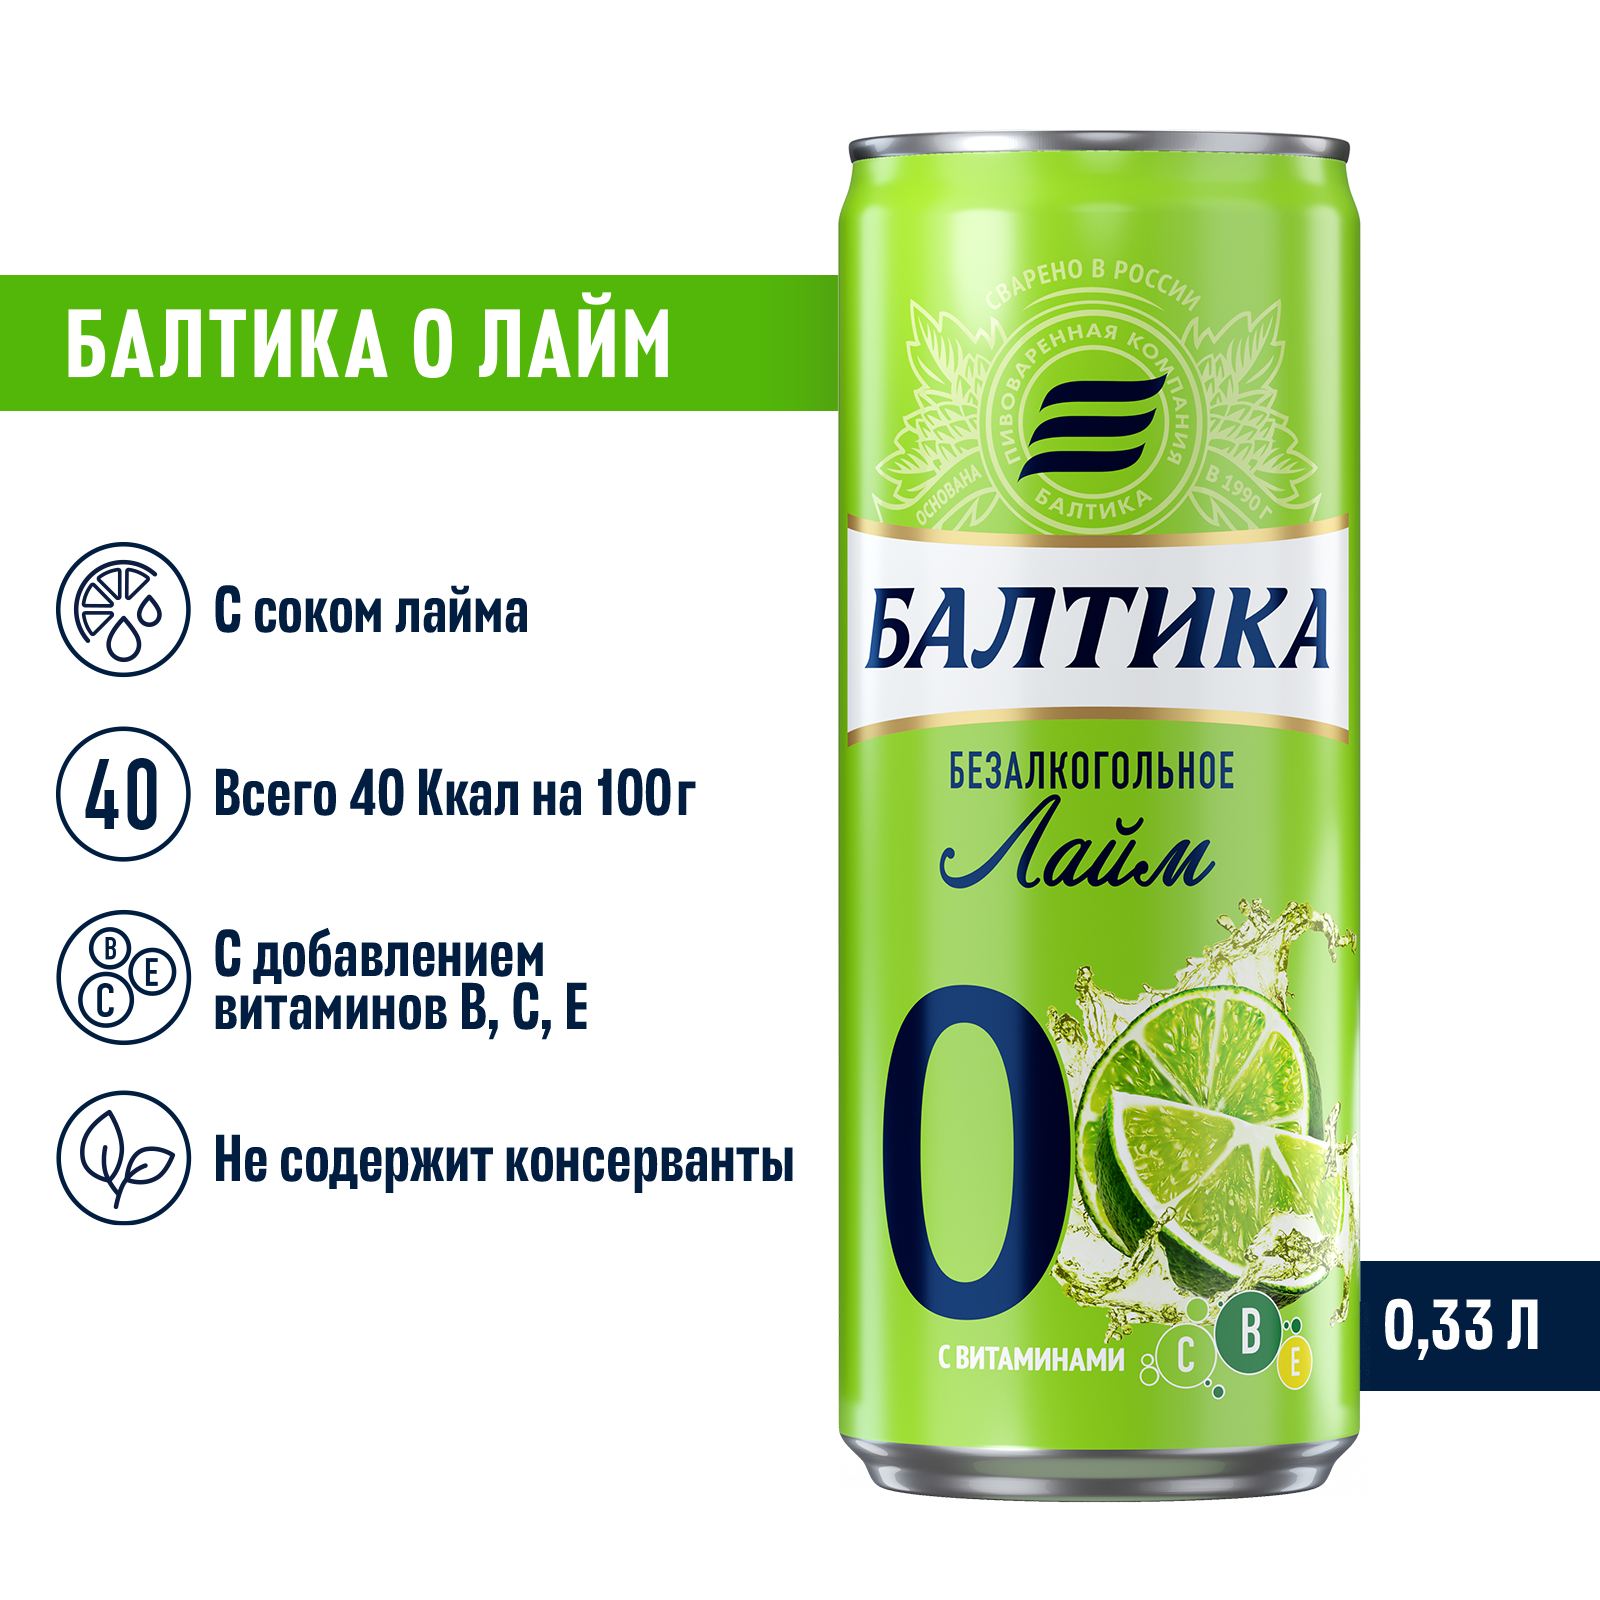 Пивной напиток Балтика №0 Лайм безалкогольное 0,33 л, банка